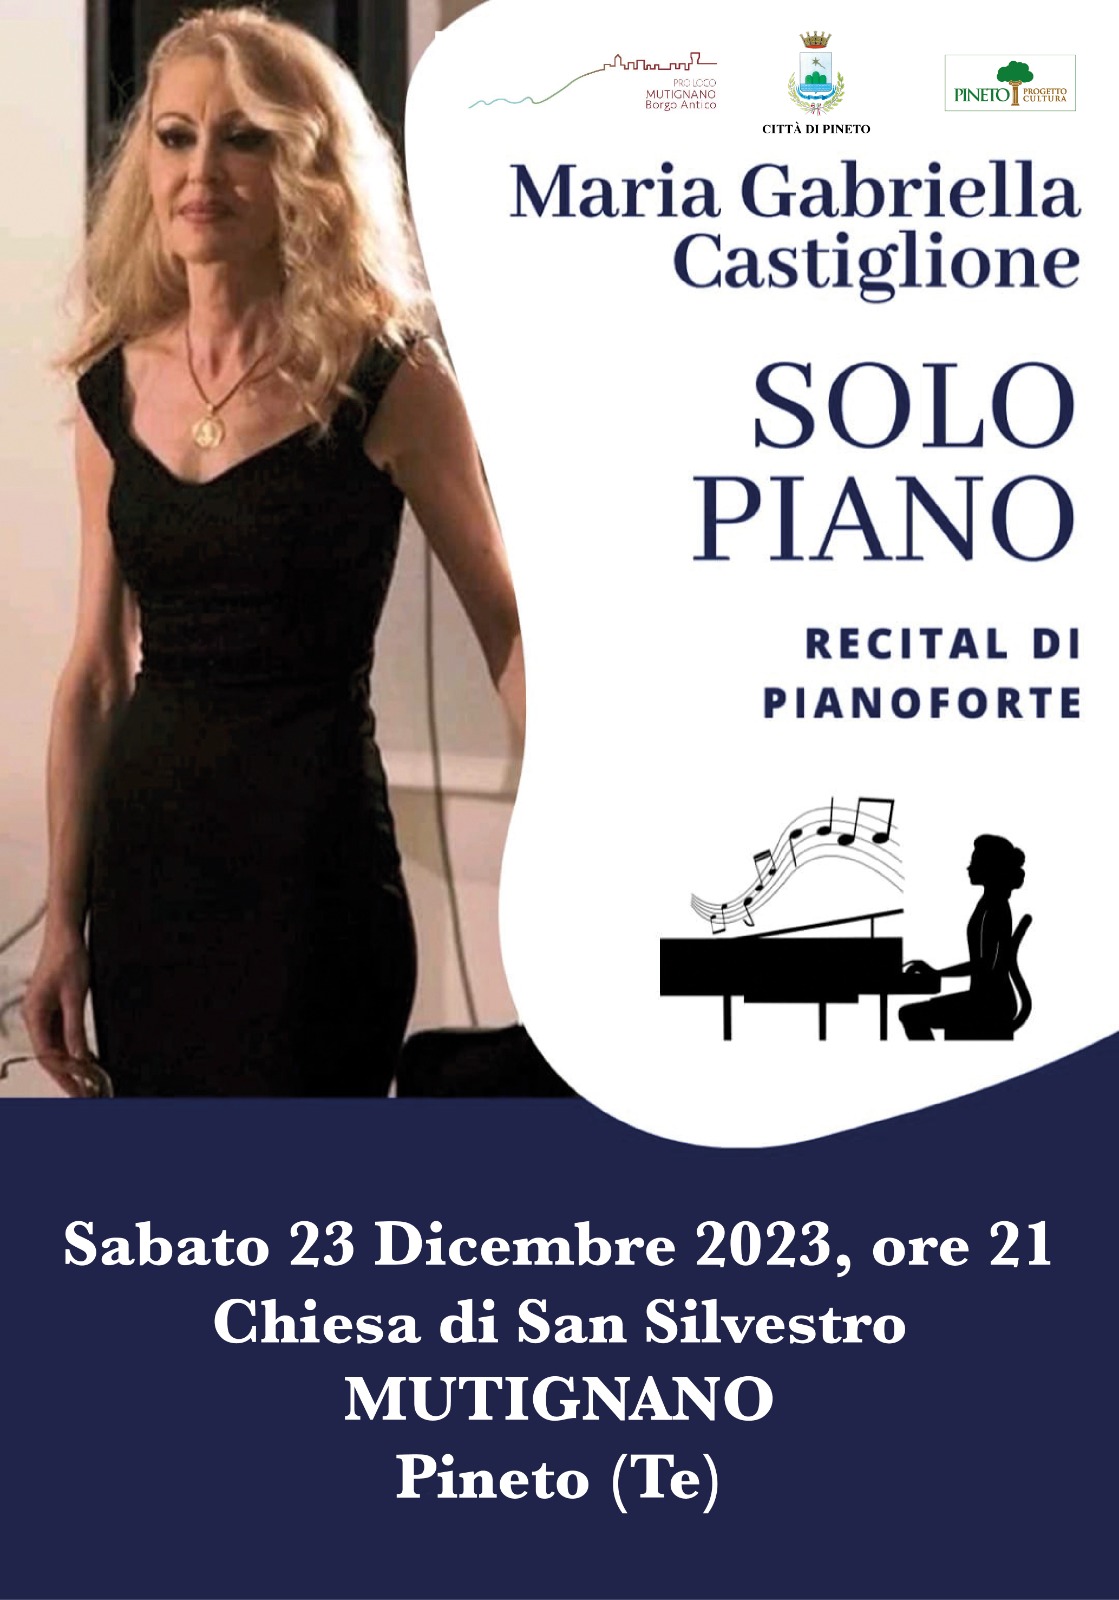 Pineto. A Mutignano recital pianistico di Maria Gabriella Castiglione